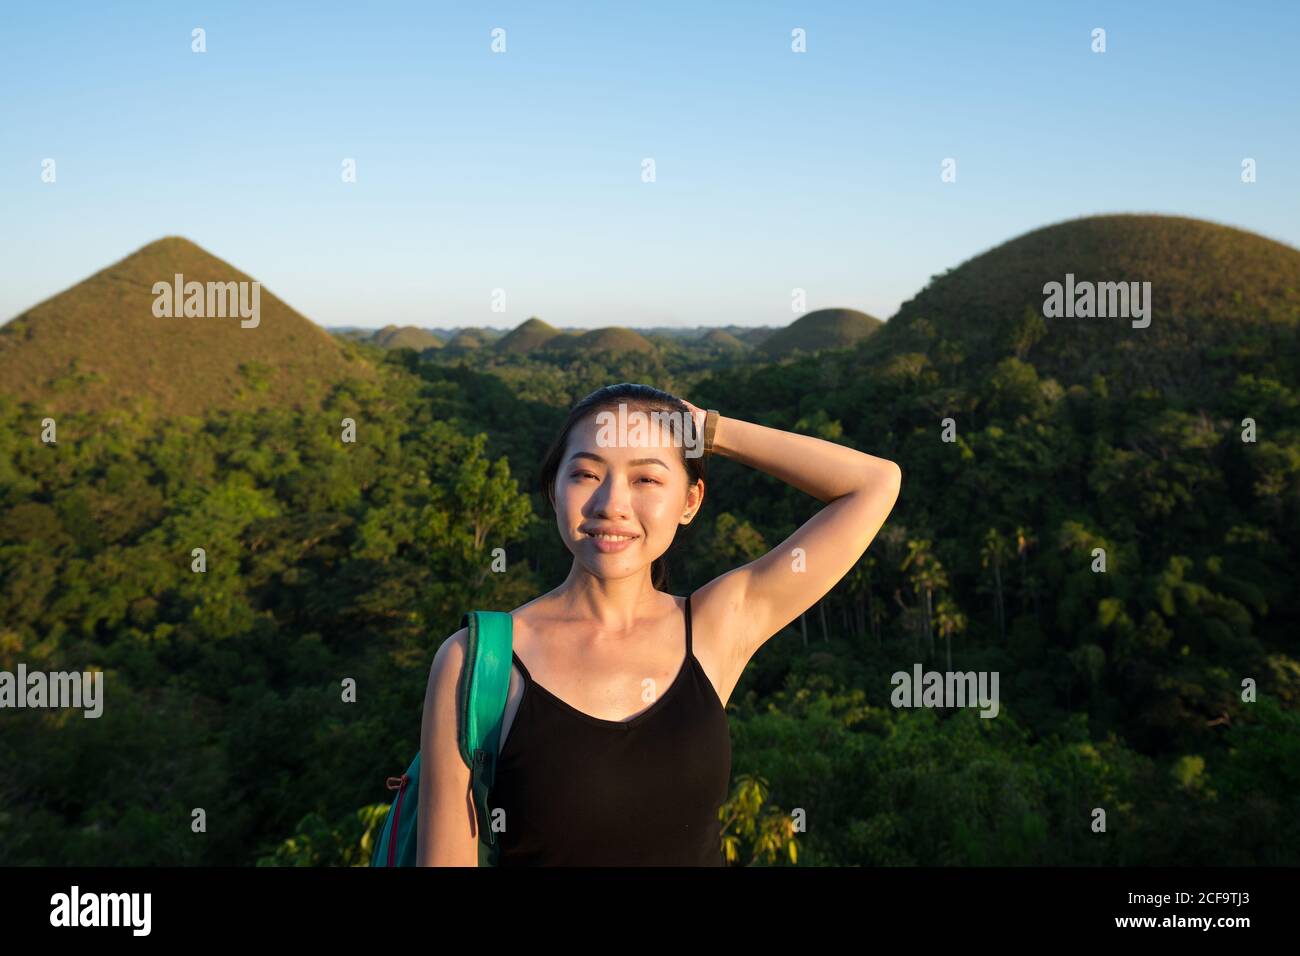 Joyeuse jeune asiatique touriste en noir et gris pantalon regardant la caméra à côté de la clôture en observation terrasse avec collines vertes et ciel bleu en arrière-plan Banque D'Images